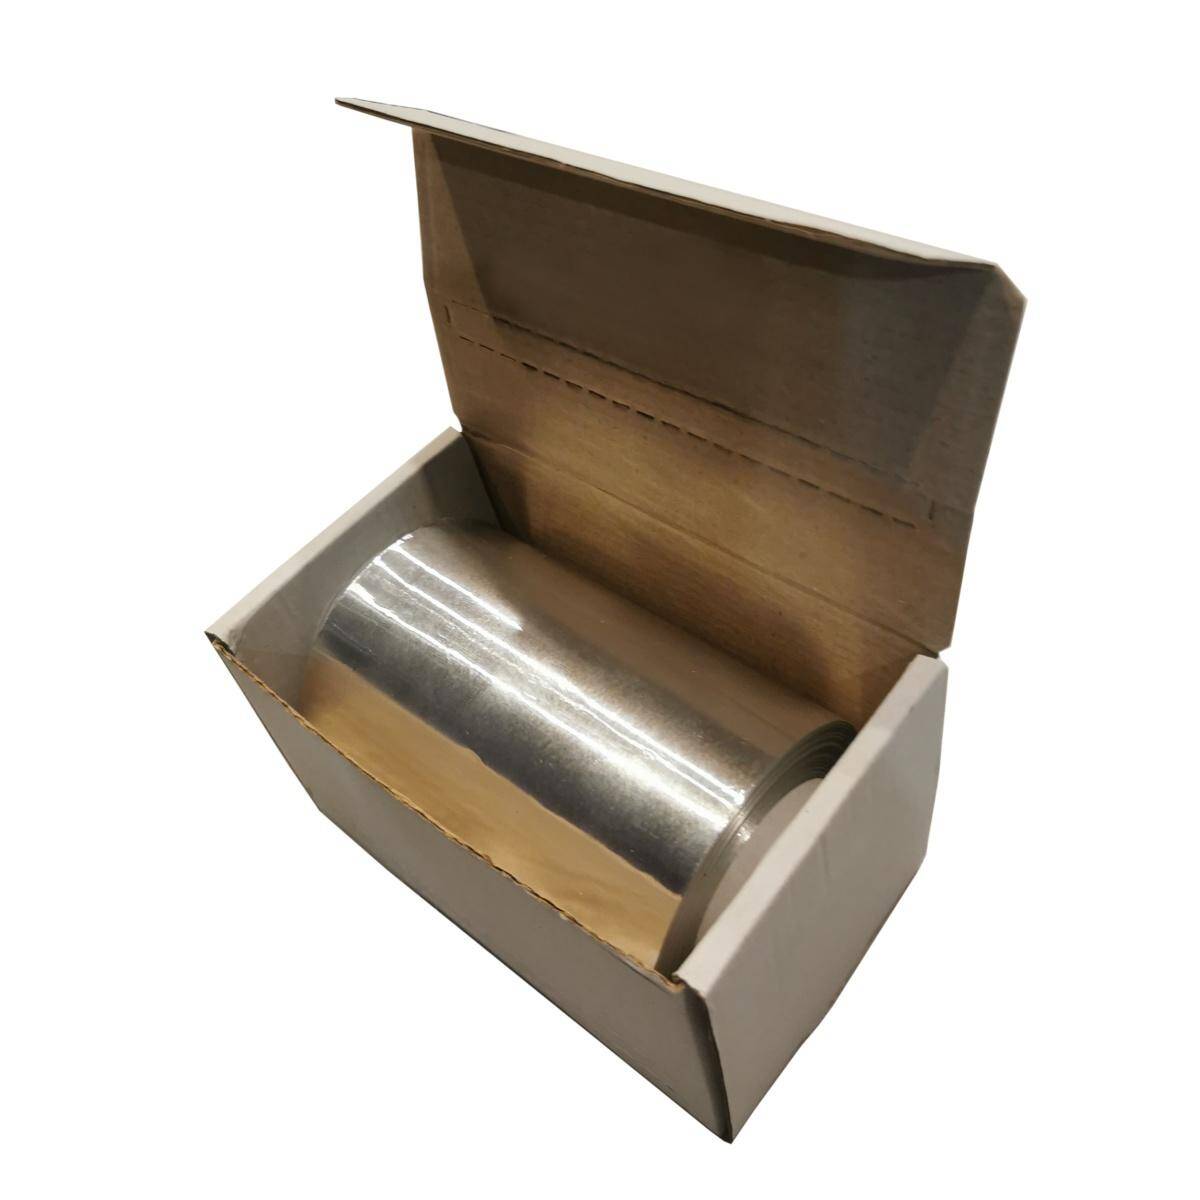 BARBERWORLD - Folia Fryzjerska 0,8kg BOX